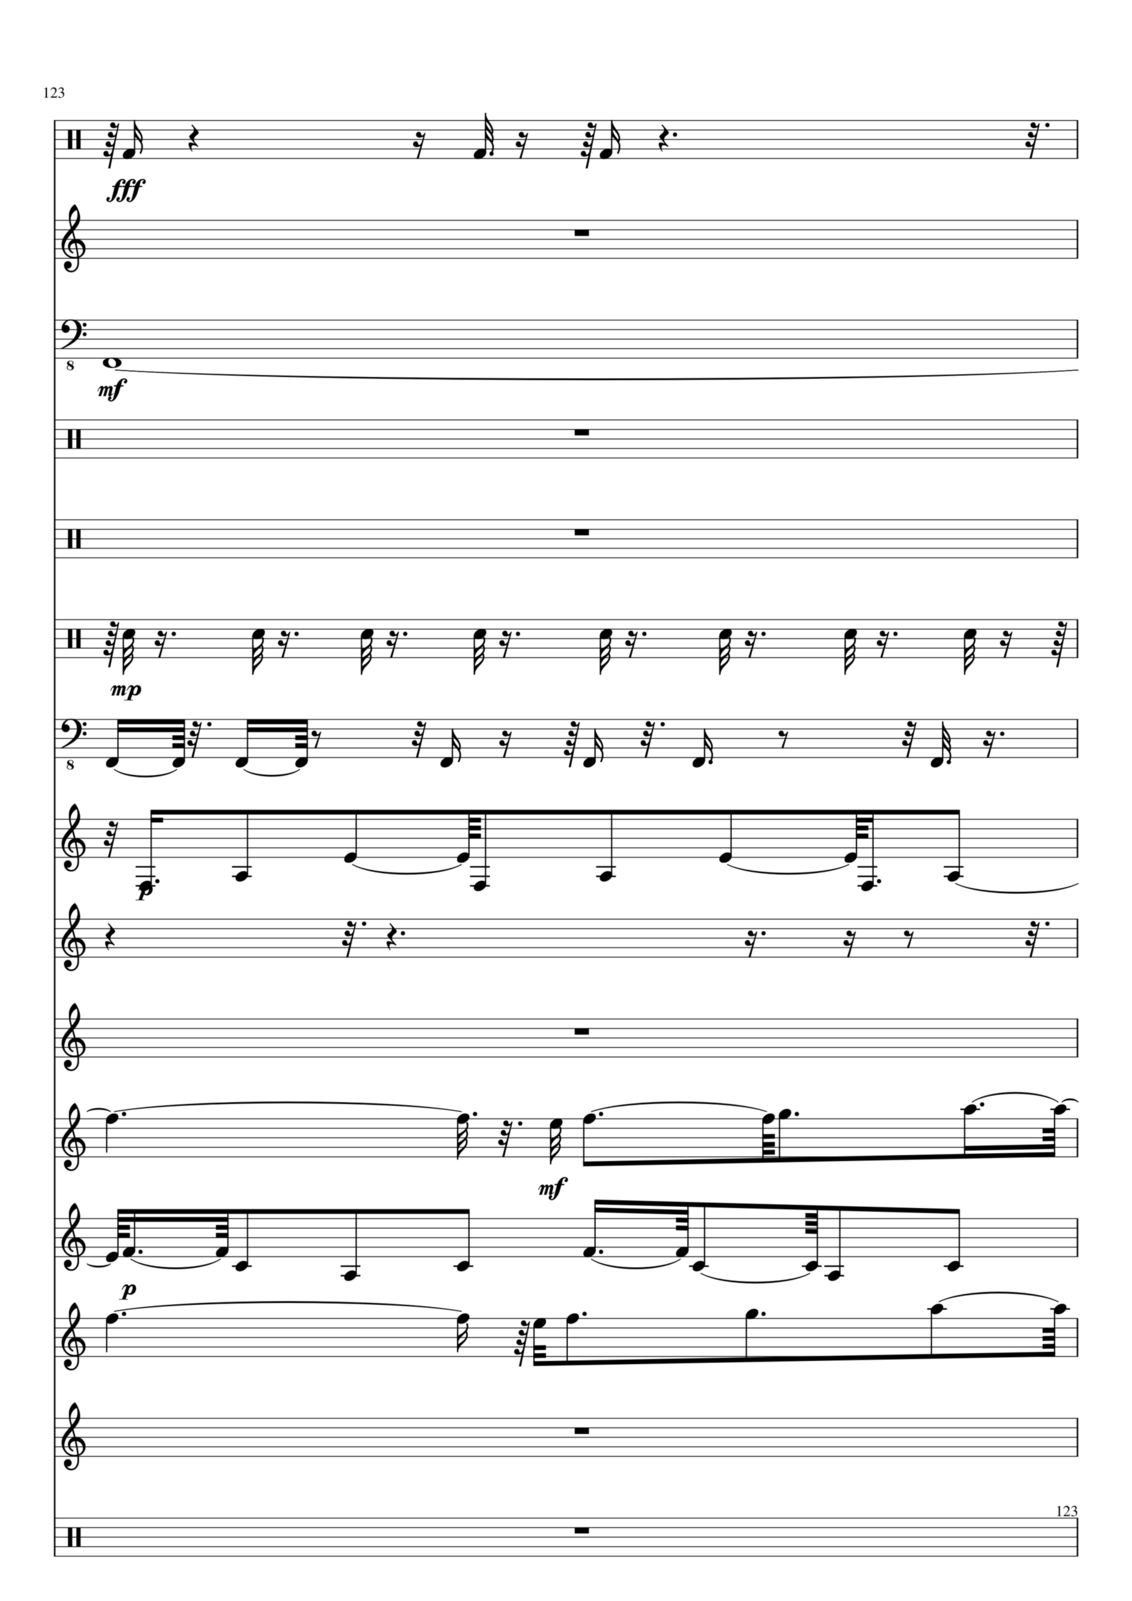 Utro polinyi slide, Image 123